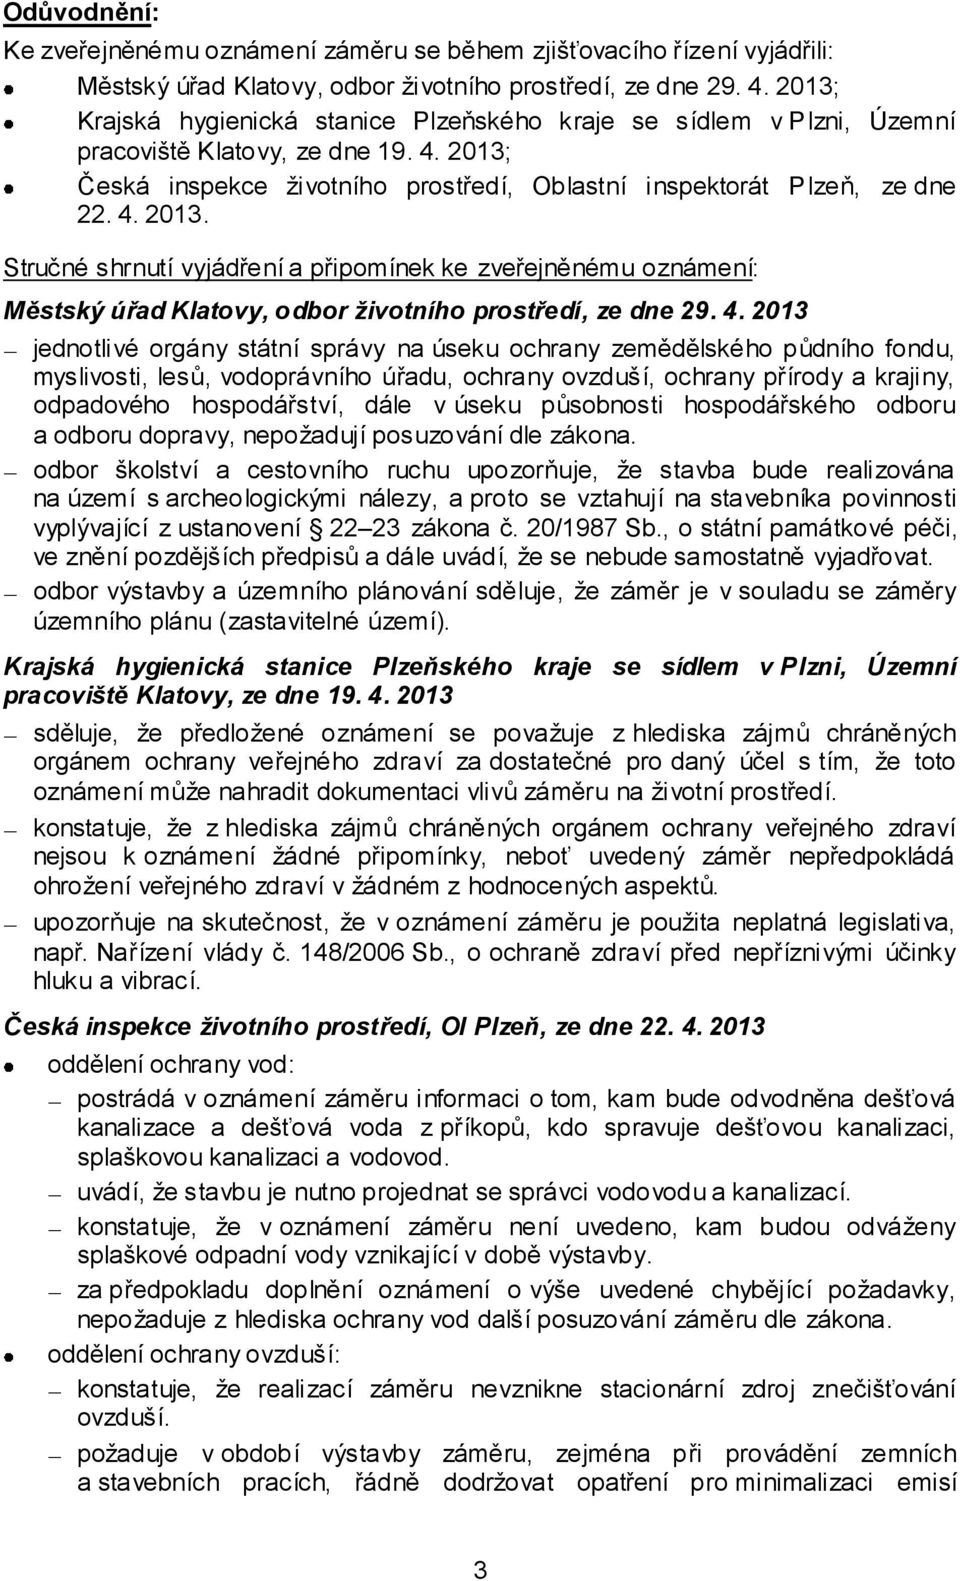 Česká inspekce životního prostředí, Oblastní inspektorát Plzeň, ze dne 22. 4. 2013.